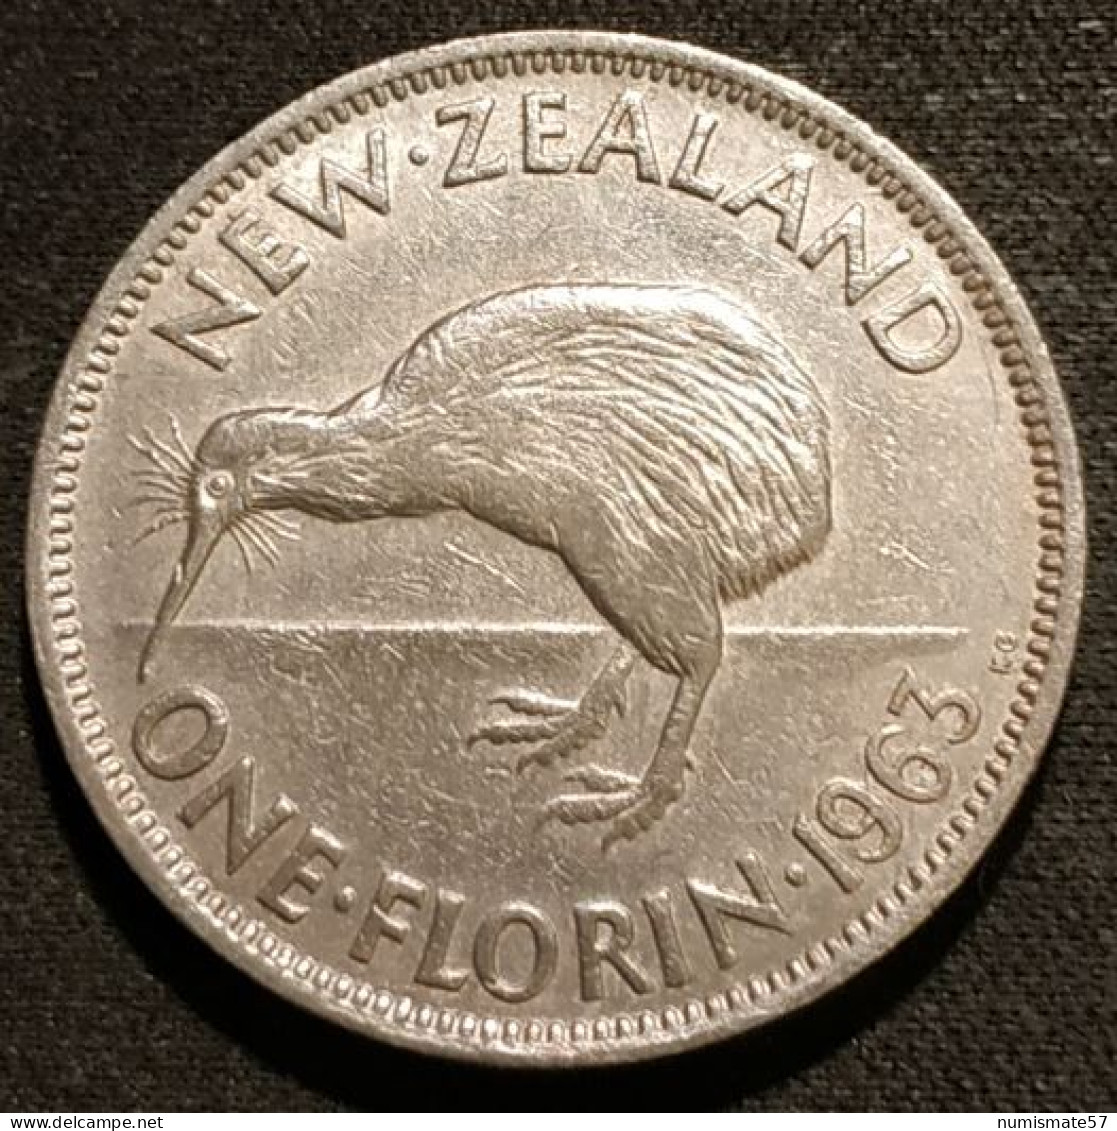 RARE - NOUVELLE ZELANDE - NEW ZEALAND - ONE - 1 FLORIN 1963 - Elisabeth II - KM 28.2 - Nouvelle-Zélande